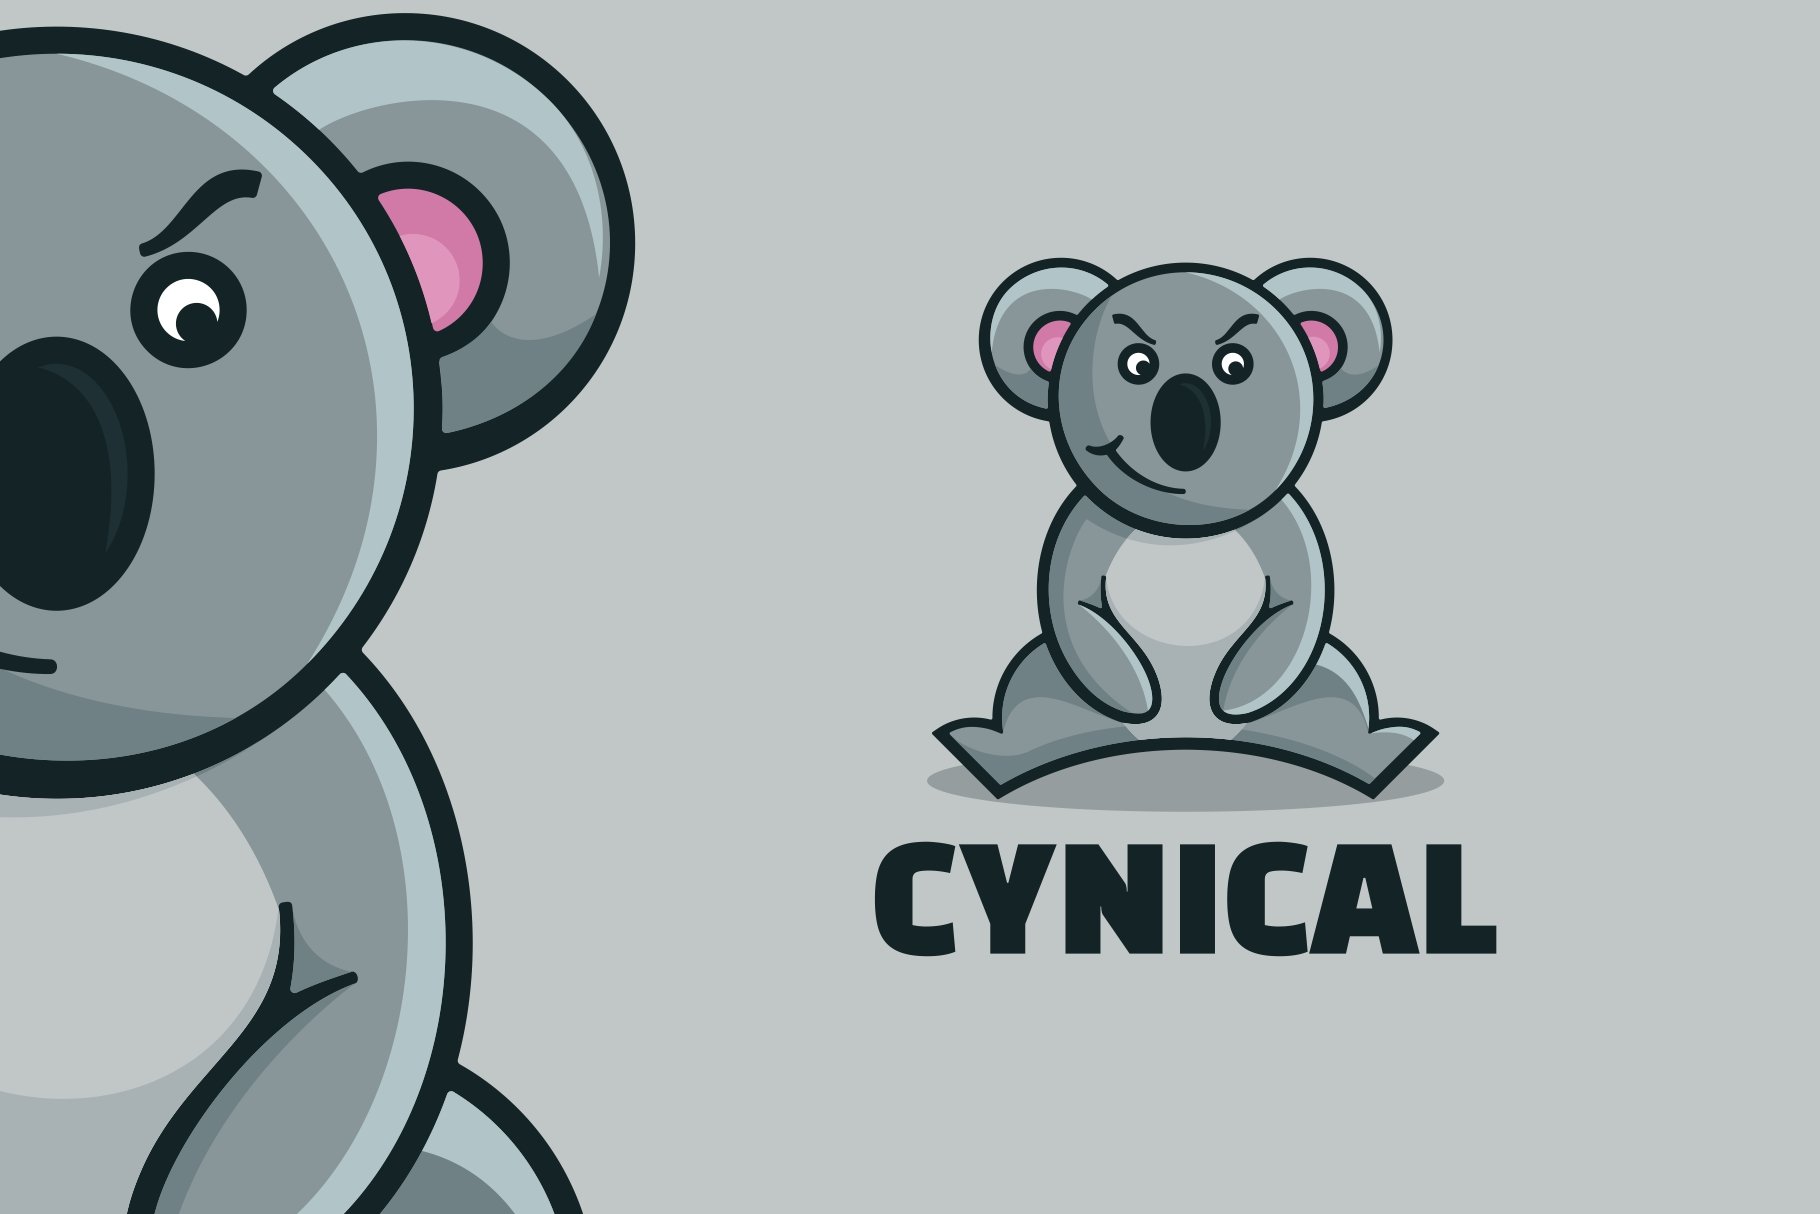 Koala Simple Mascot Logo cover image.